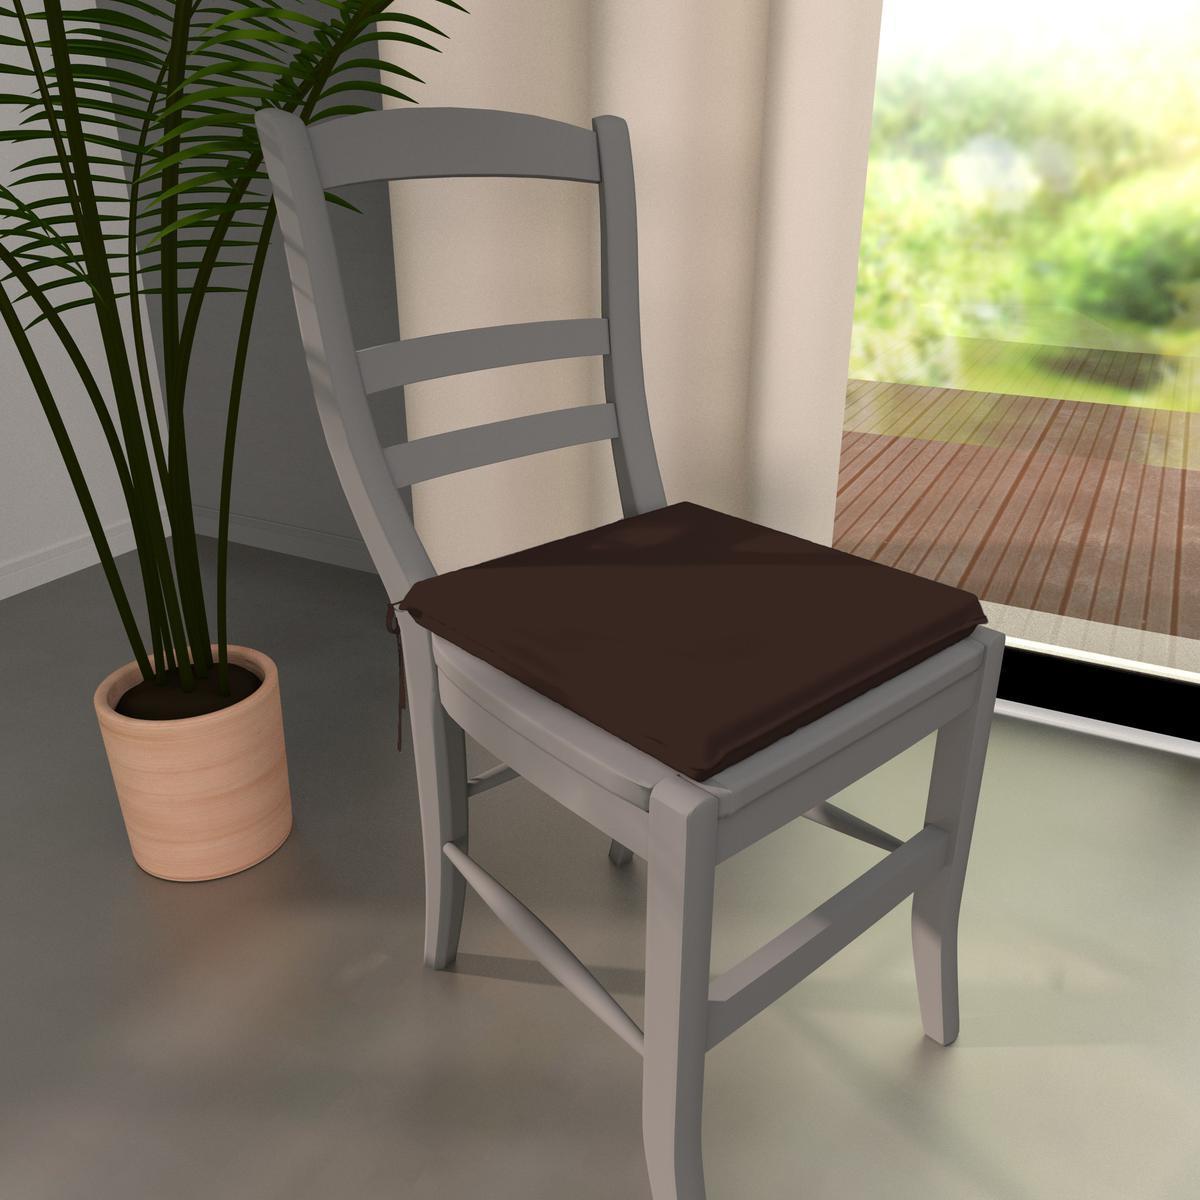 Galette de chaise - 100% coton - 36x38cm - Marron chocolat